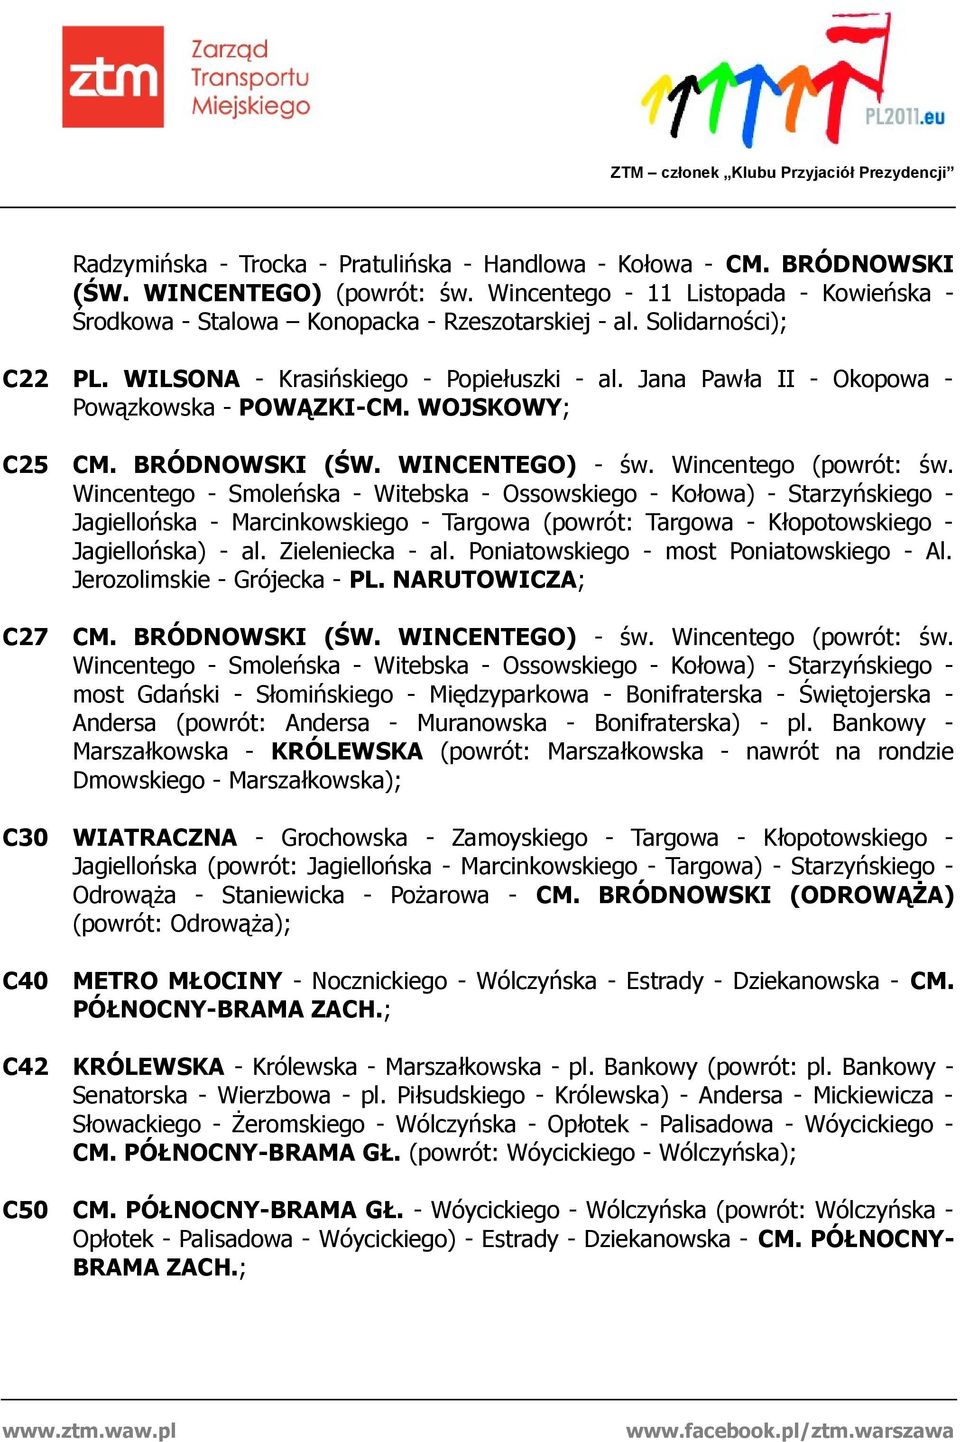 Wincentego - Smoleńska - Witebska - Ossowskiego - Kołowa) - Starzyńskiego - Jagiellońska - Marcinkowskiego - Targowa (powrót: Targowa - Kłopotowskiego - Jagiellońska) - al. Zieleniecka - al.